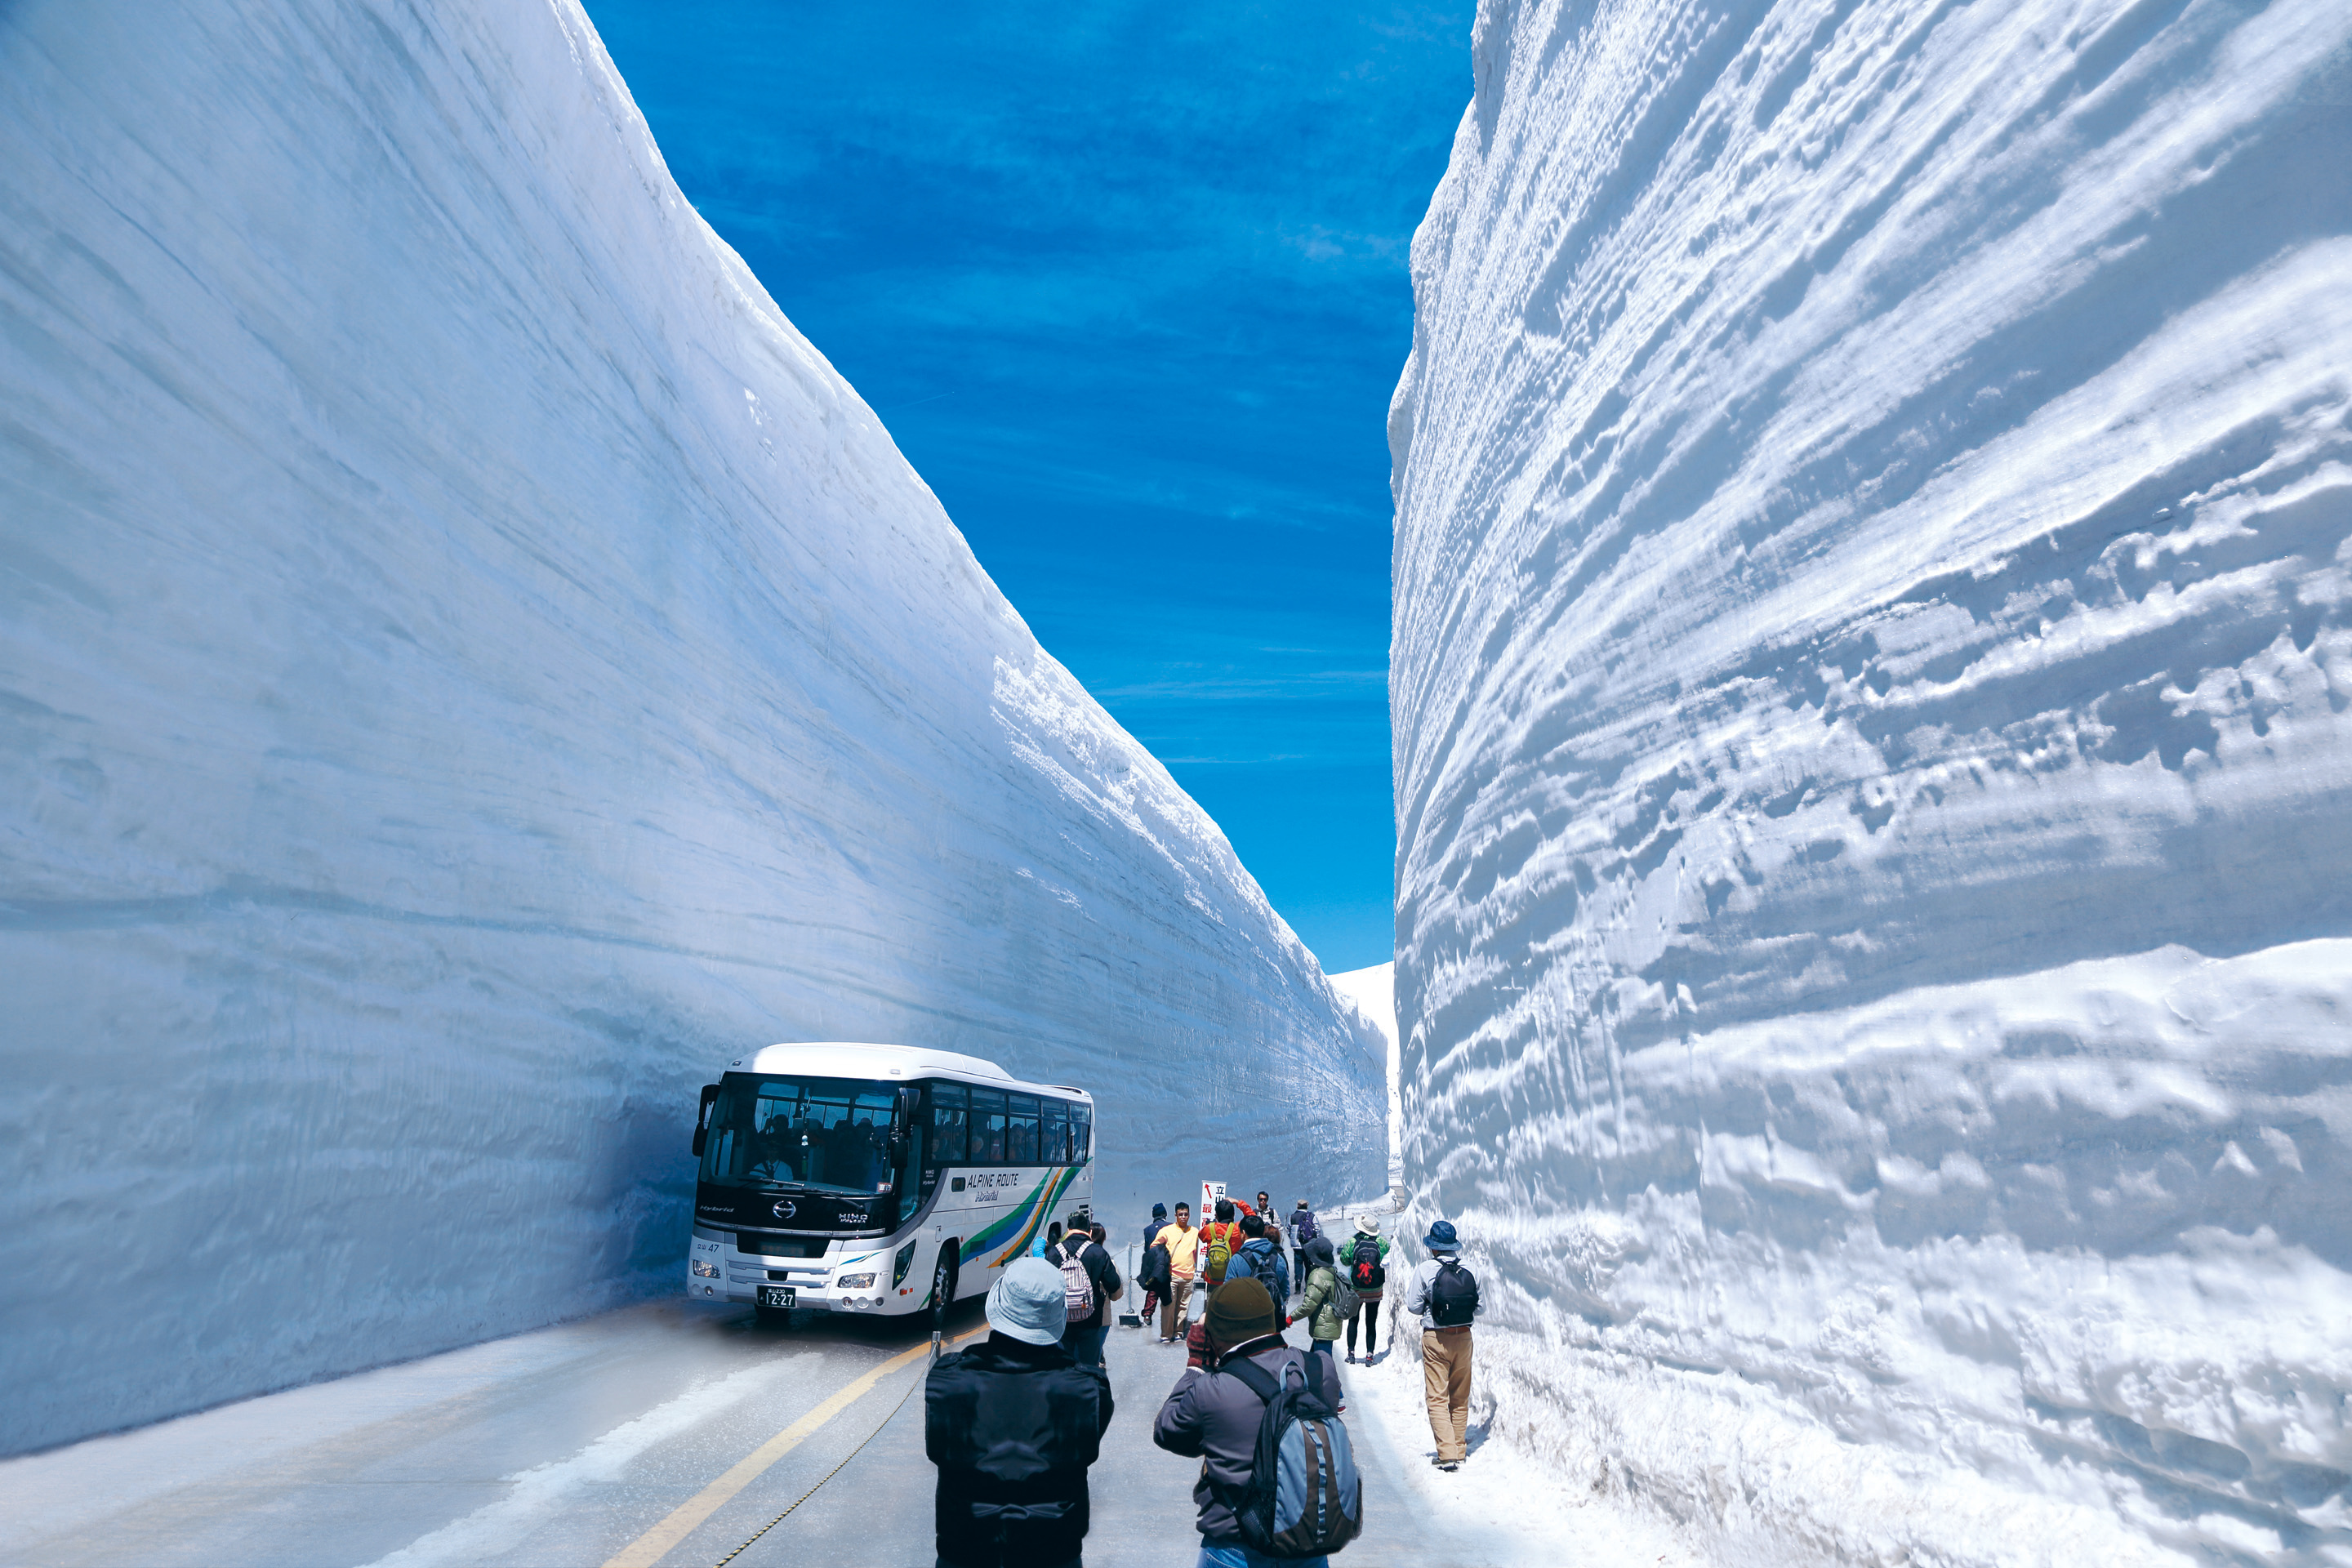 立山黒部アルペンルート 全線開業50周年でキャンペーンきっぷ発売 雪の大谷 の高さは14mに トラベル Watch